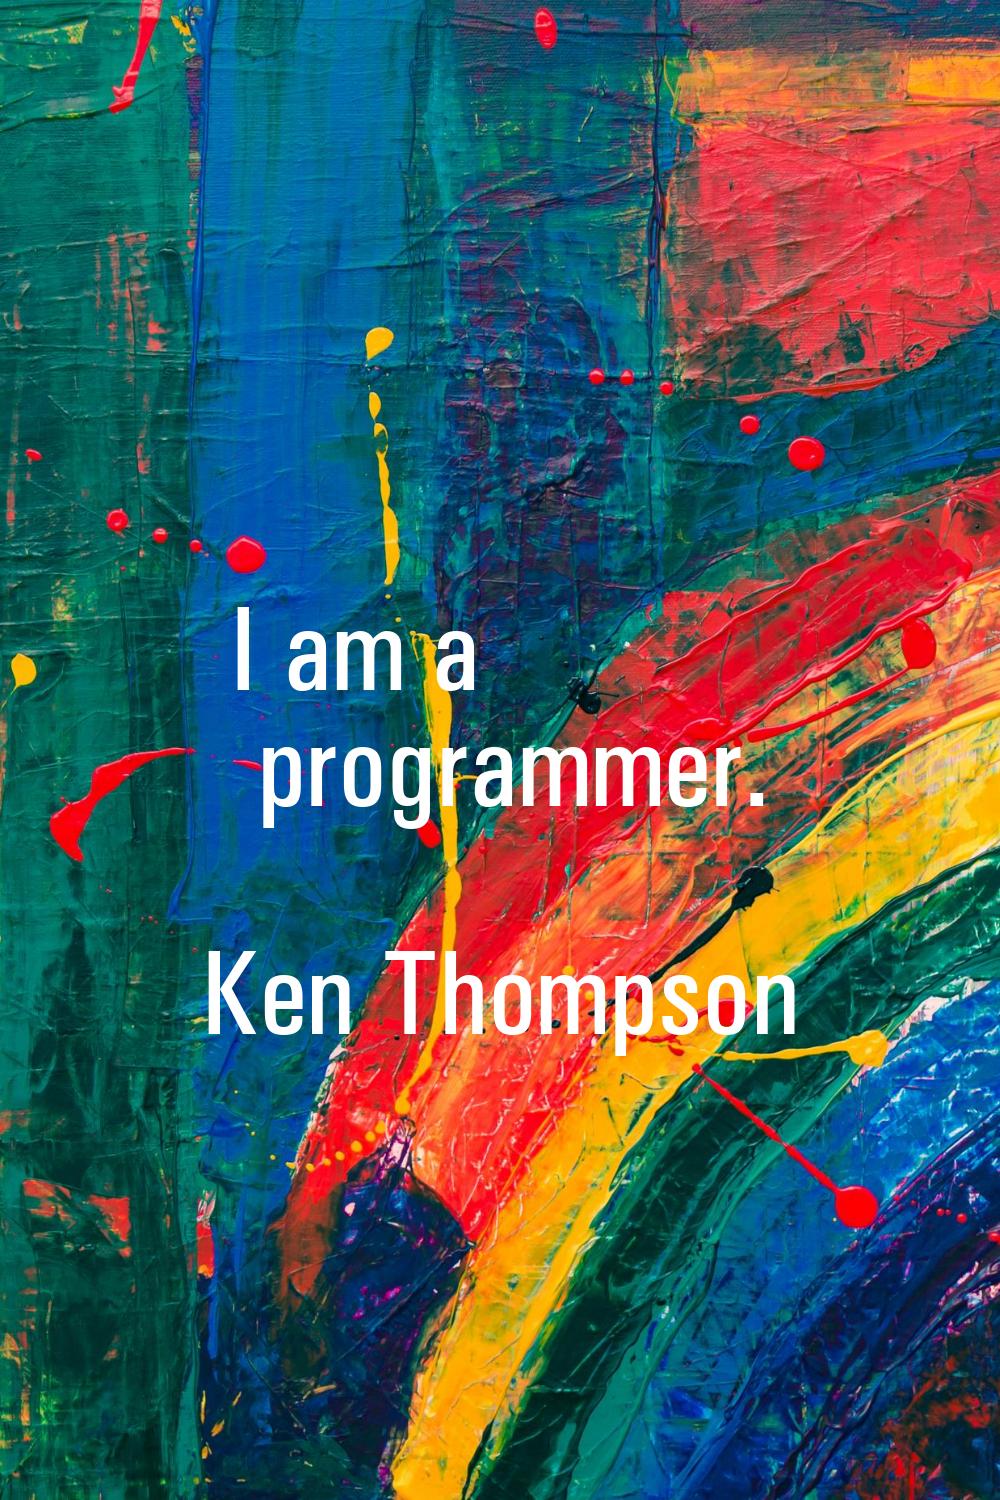 I am a programmer.